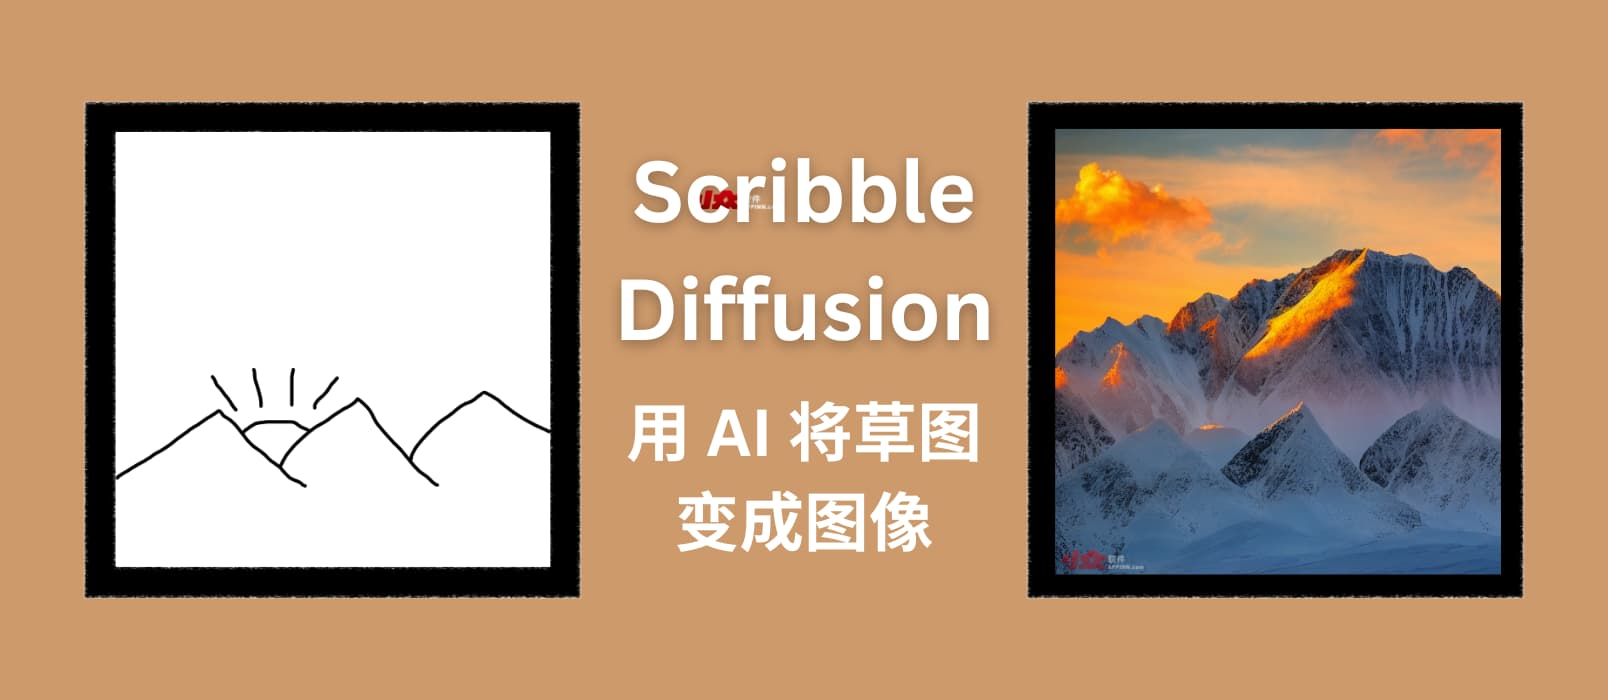 Scribble Diffusion - AI 画画，将手绘草稿转换为图片，基于 ControlNet，太搞笑了 1